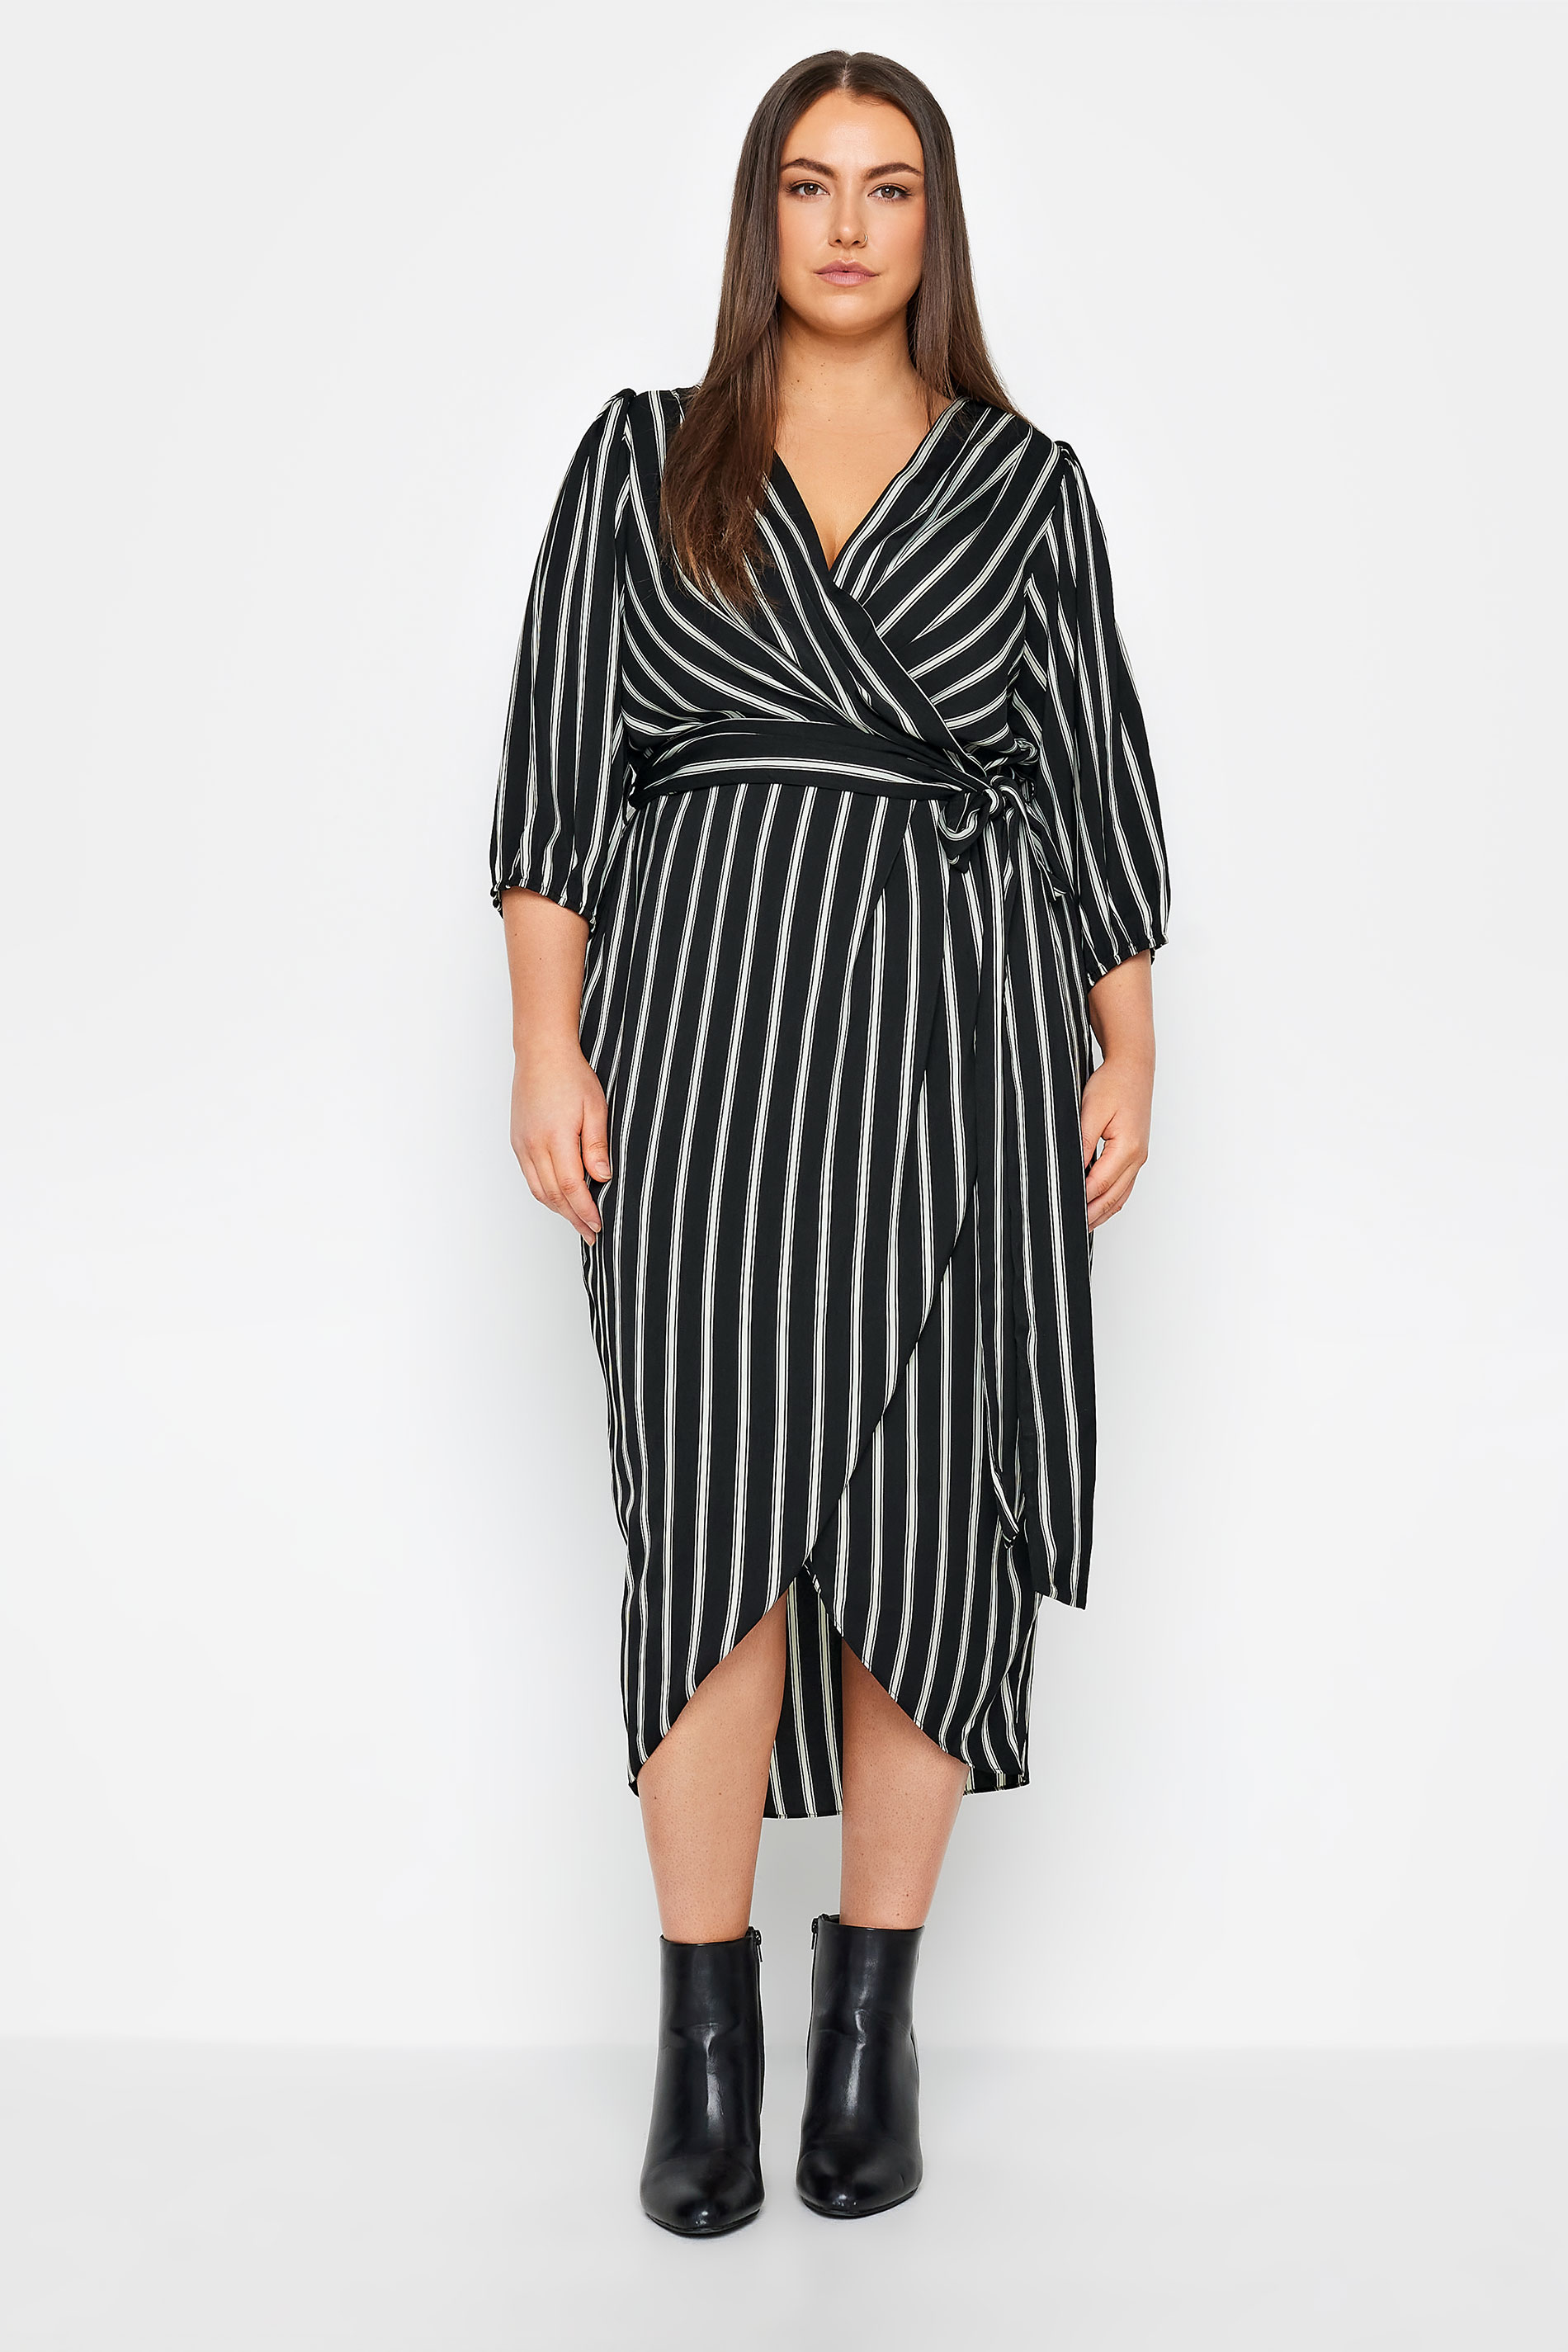 Evans Black & White Stripe Wrap Dress 2